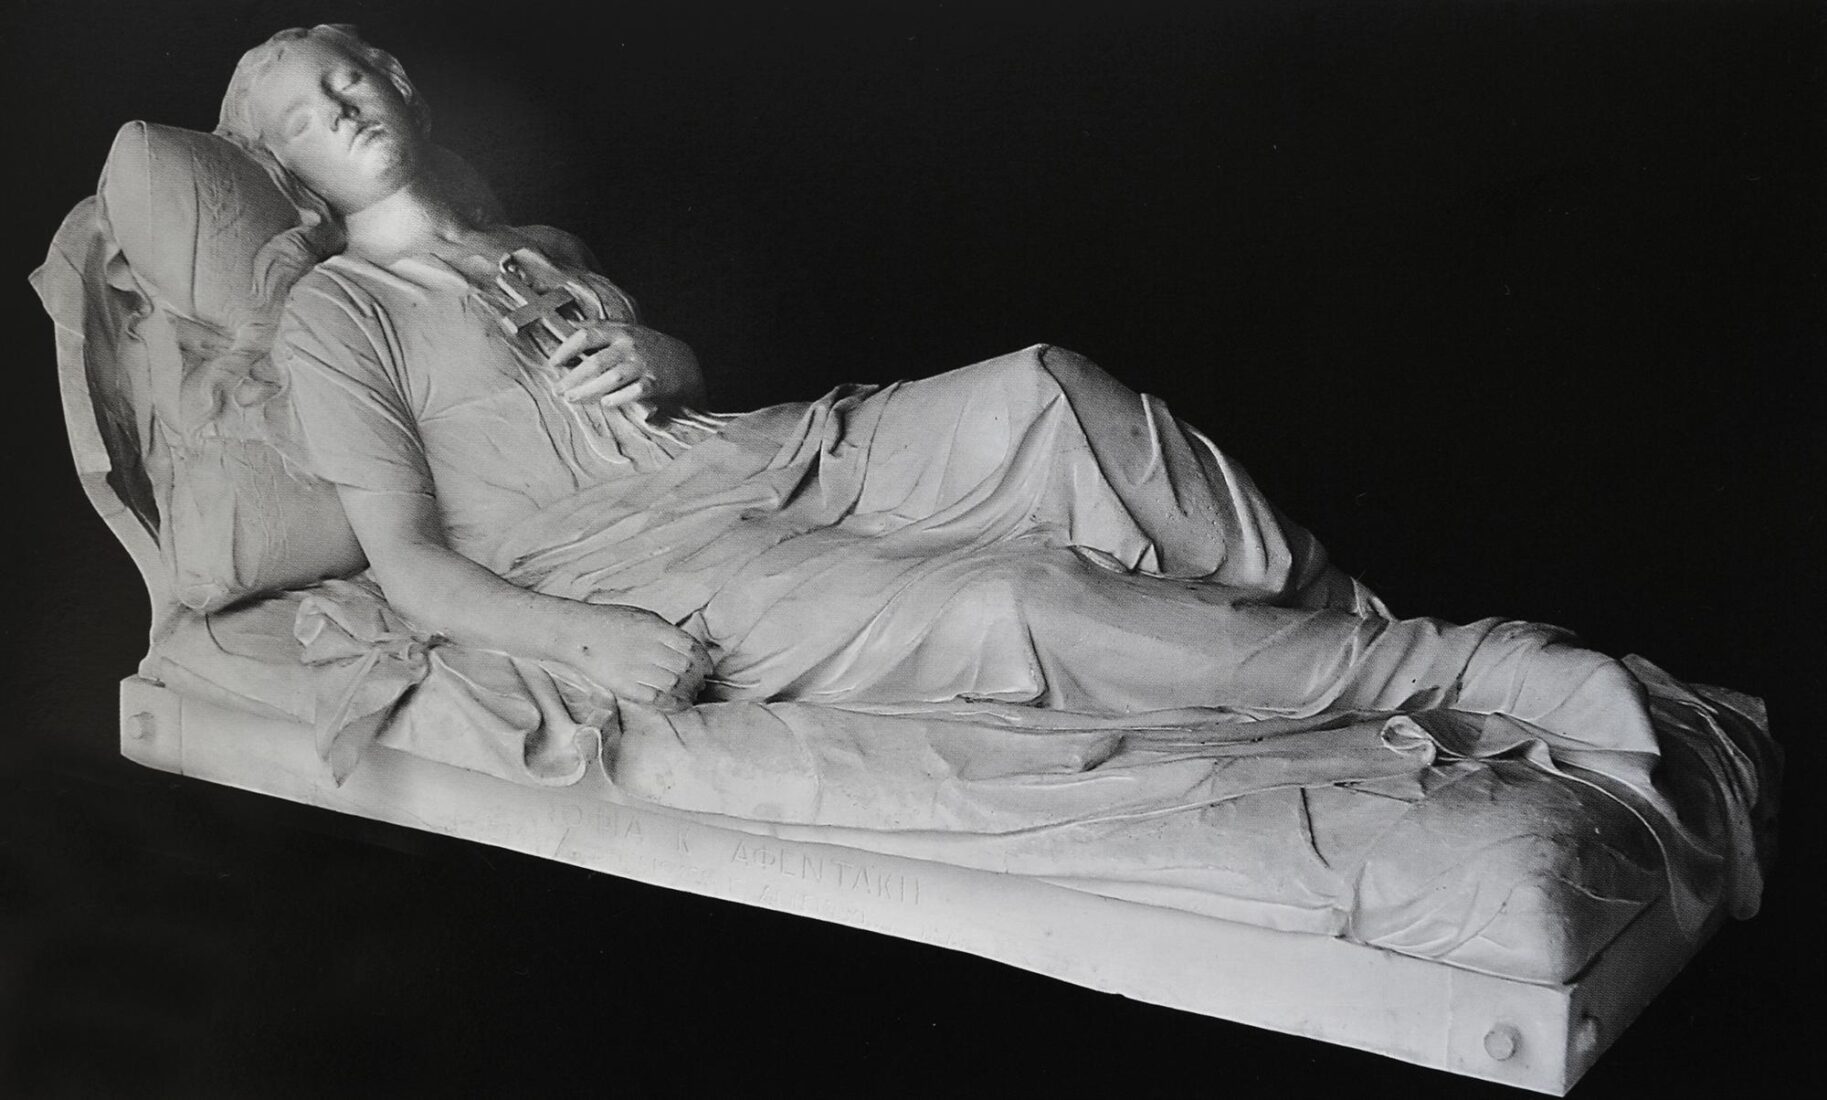 Κοιμωμένη (εκμαγείο από τον οικογενειακό τάφο της Σοφίας Αφεντάκη στο Α΄ Νεκροταφείο της Αθήνας) - Χαλεπάς Γιαννούλης